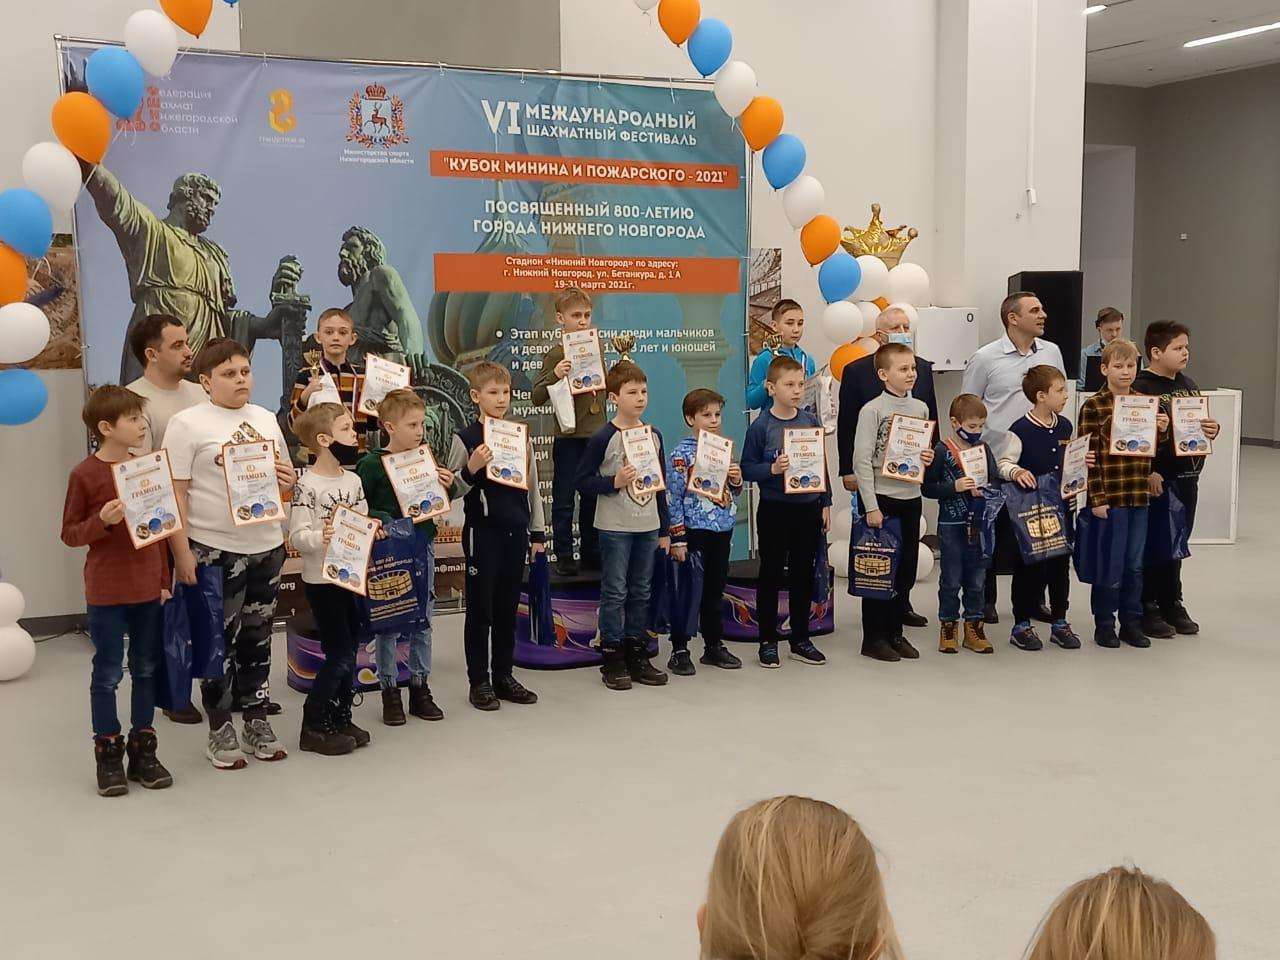 Юный шахматист из Бердска стал одним из лучших на этапе Кубка России по шахматам в Нижнем Новгороде